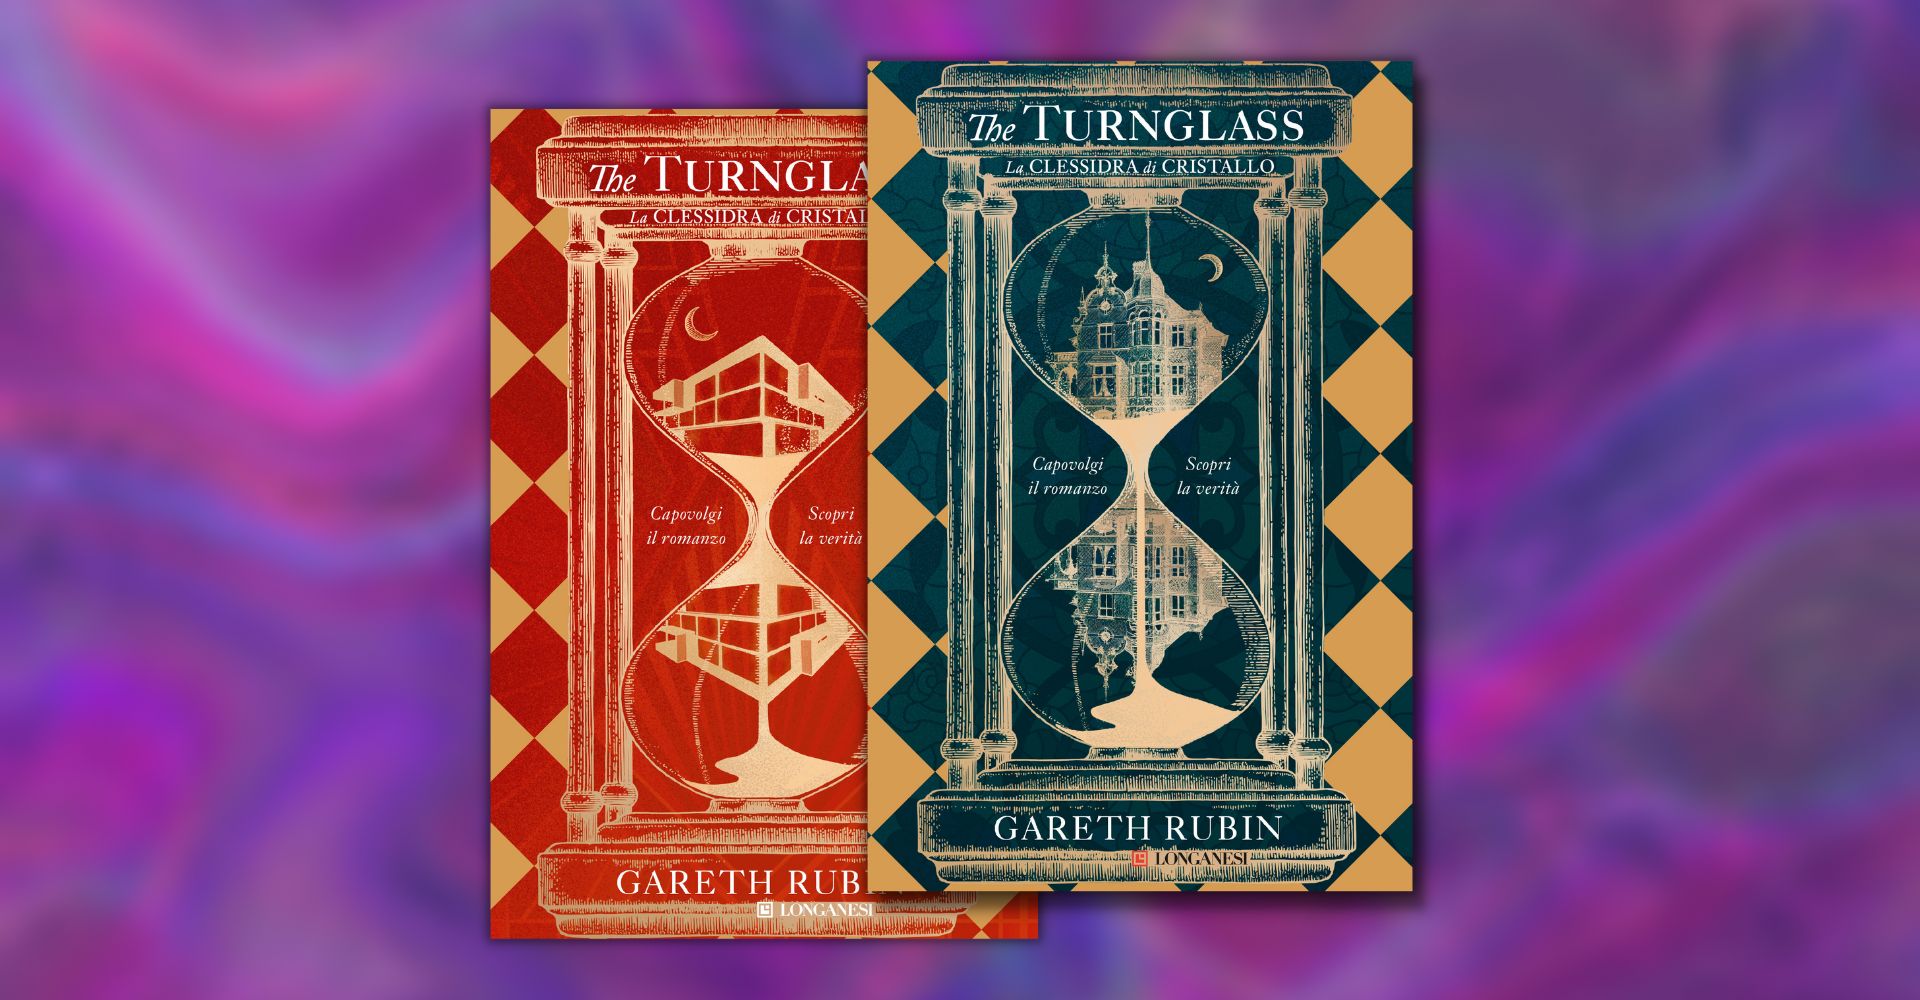 The Turnglass La clessidra di cristallo: un curioso romanzo tête-bêche  (per un enigma da risolvere) 